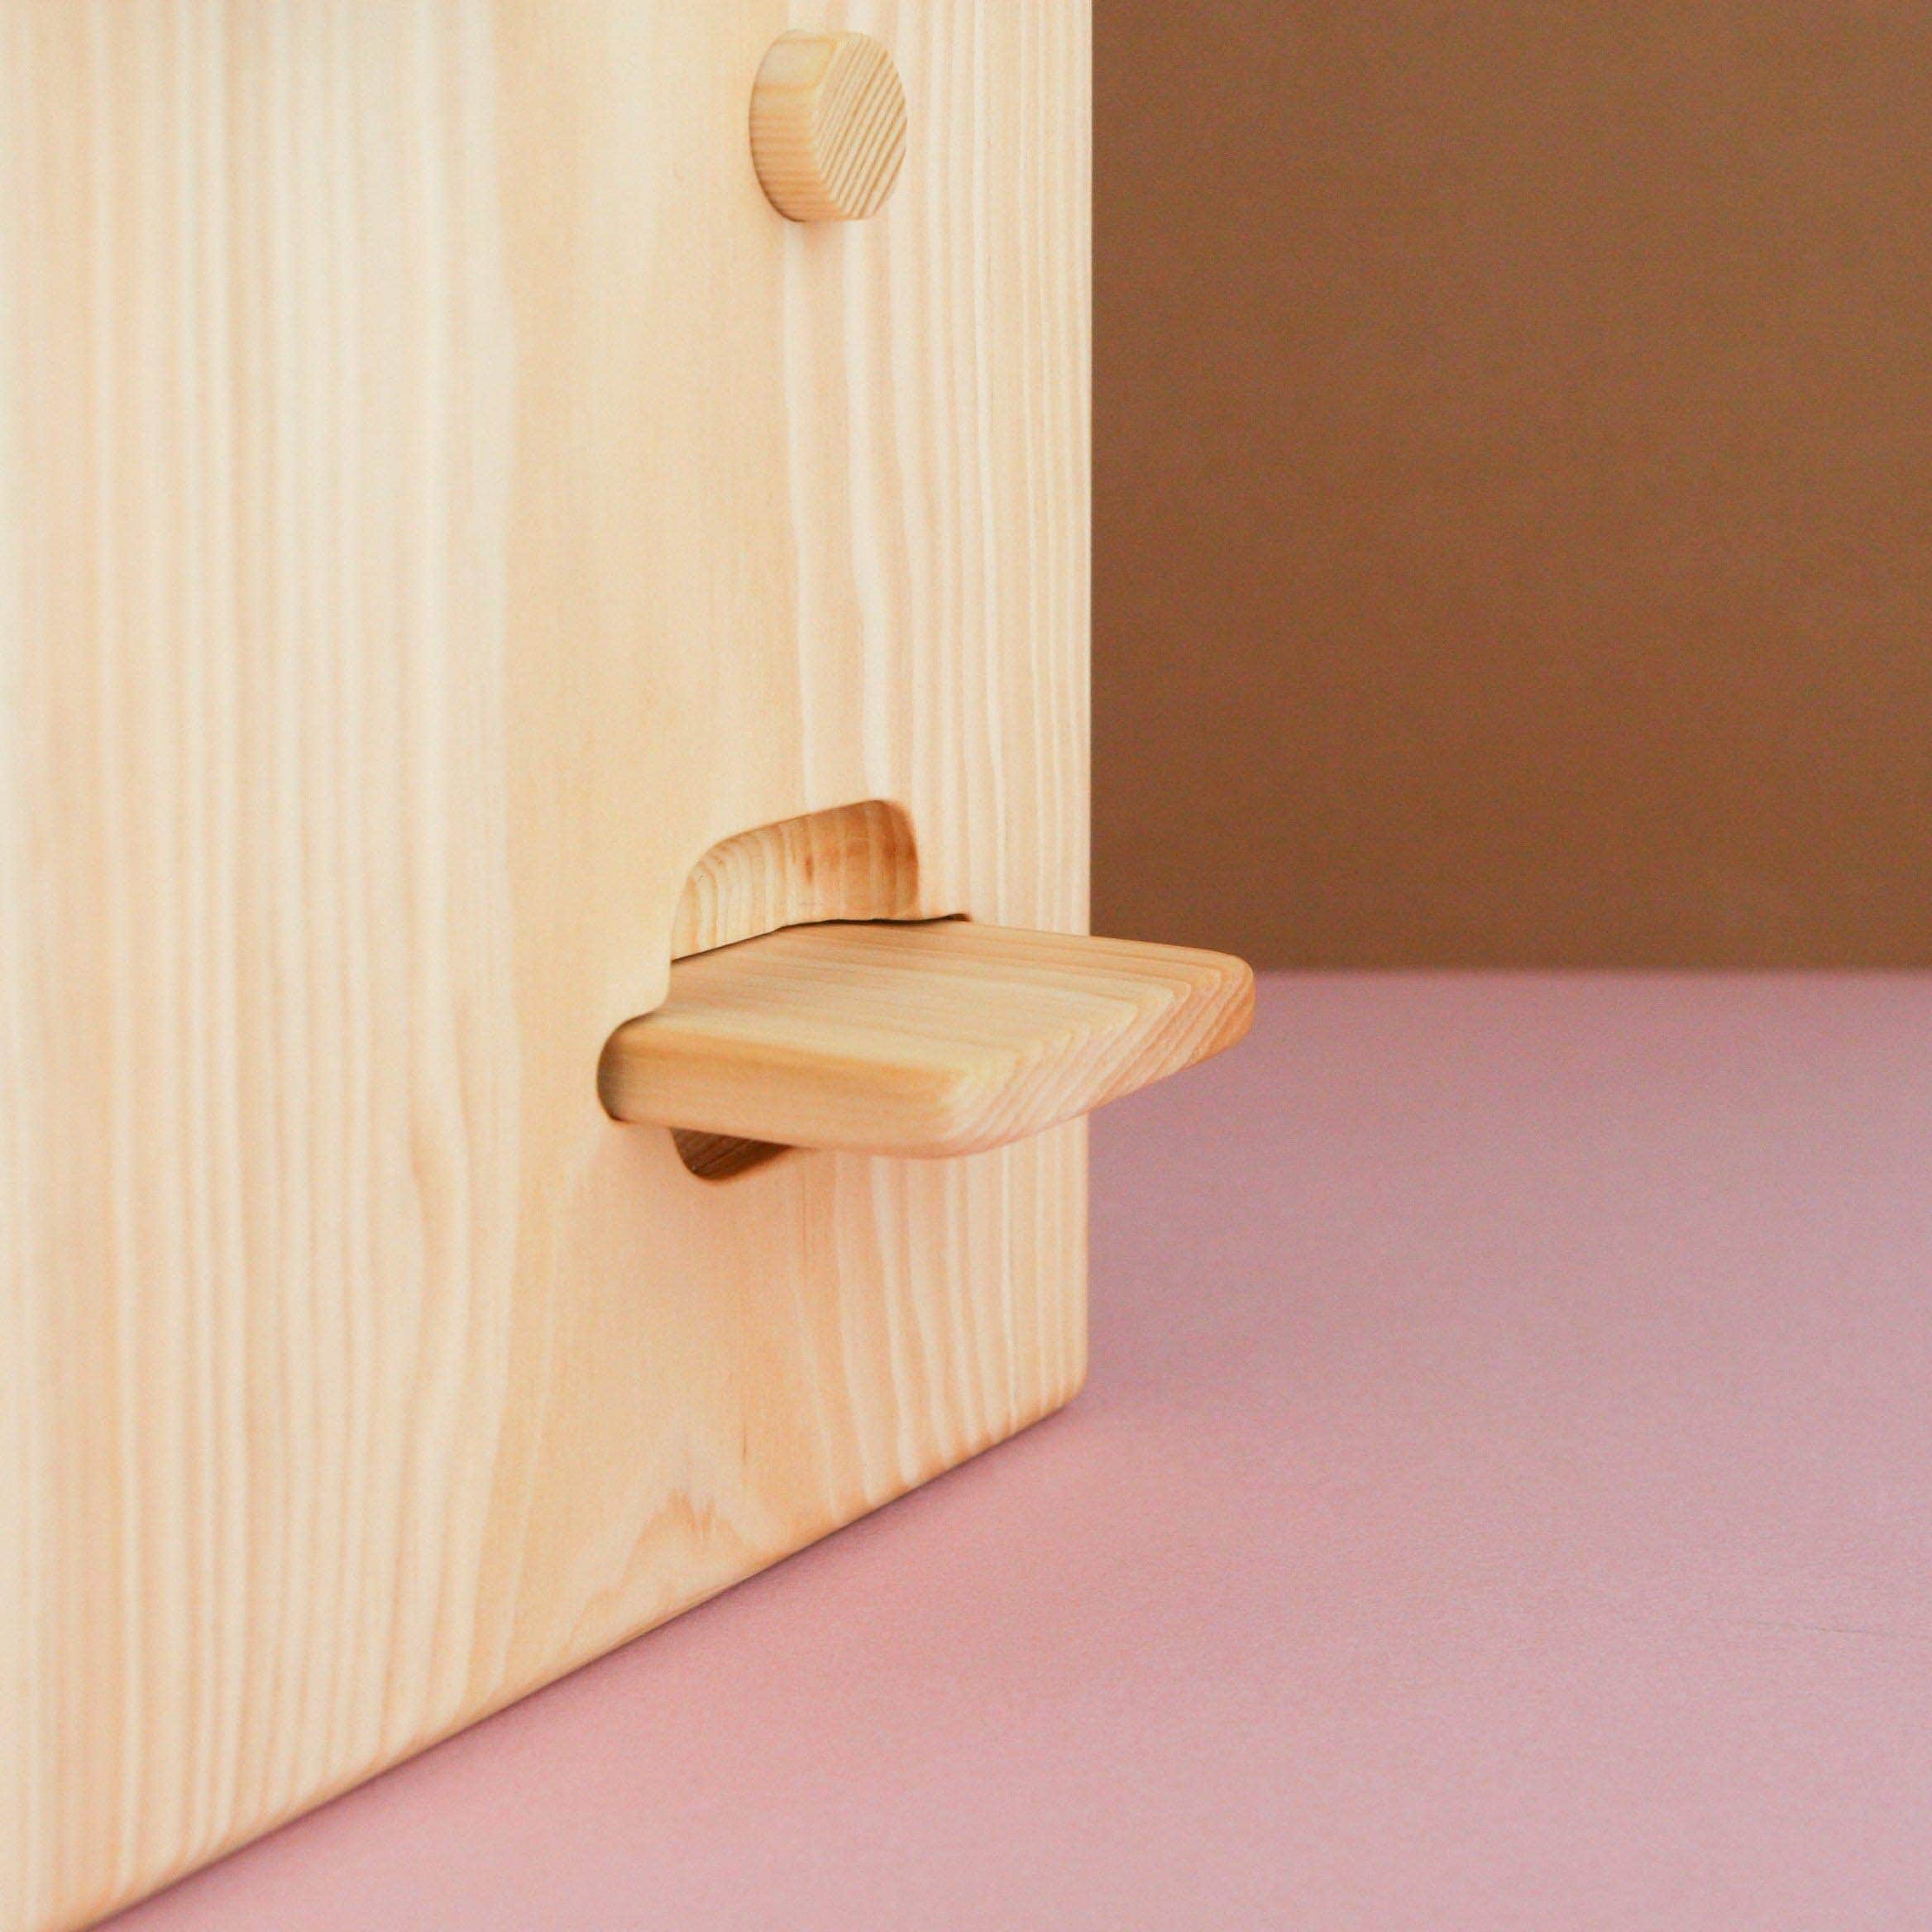 Handgemachtes Holz Munztelefon holzspielzeuge - jolly designs